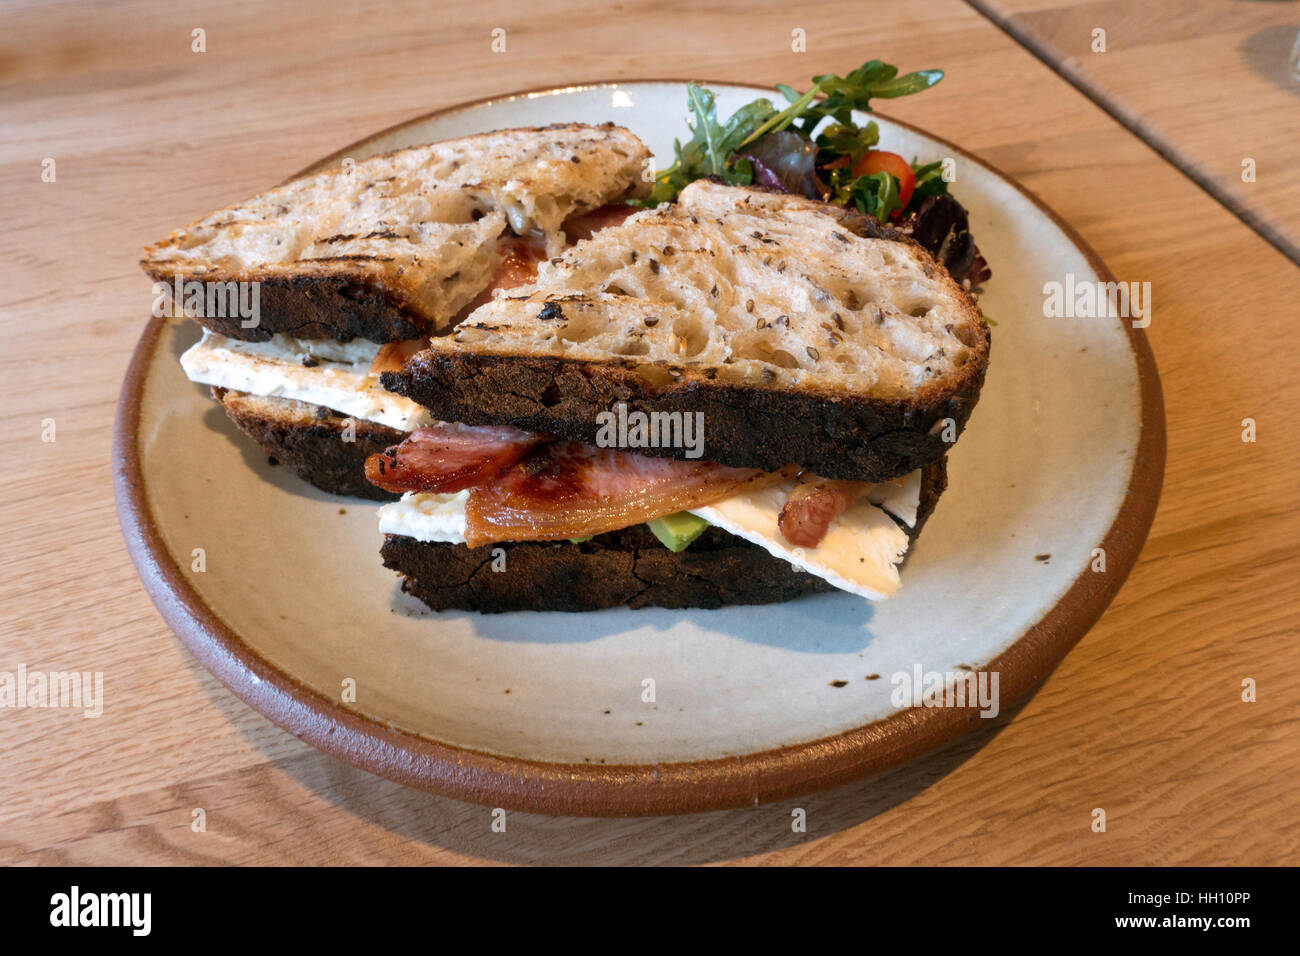 Le déjeuner snack-Bacon sandwich Avocat Brie sur pain au levain avec feuilles de salade Banque D'Images